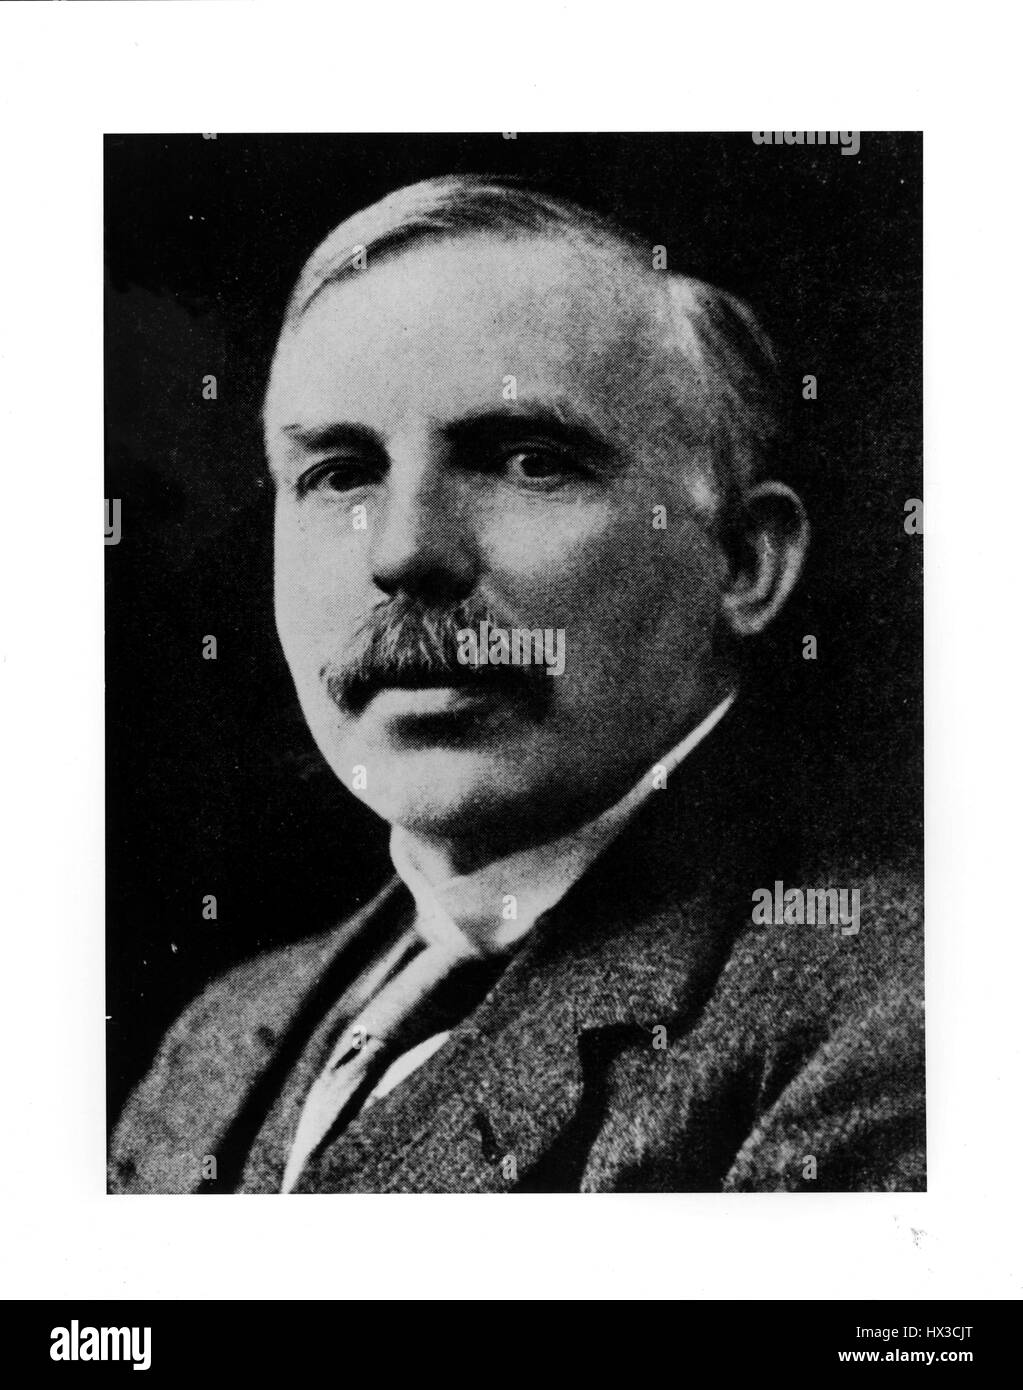 Porträt von Ernst Rutherford, Gewinner des 1908 den Nobelpreis für Chemie 1920. Bild mit freundlicher Genehmigung US Department of Energy. Stockfoto